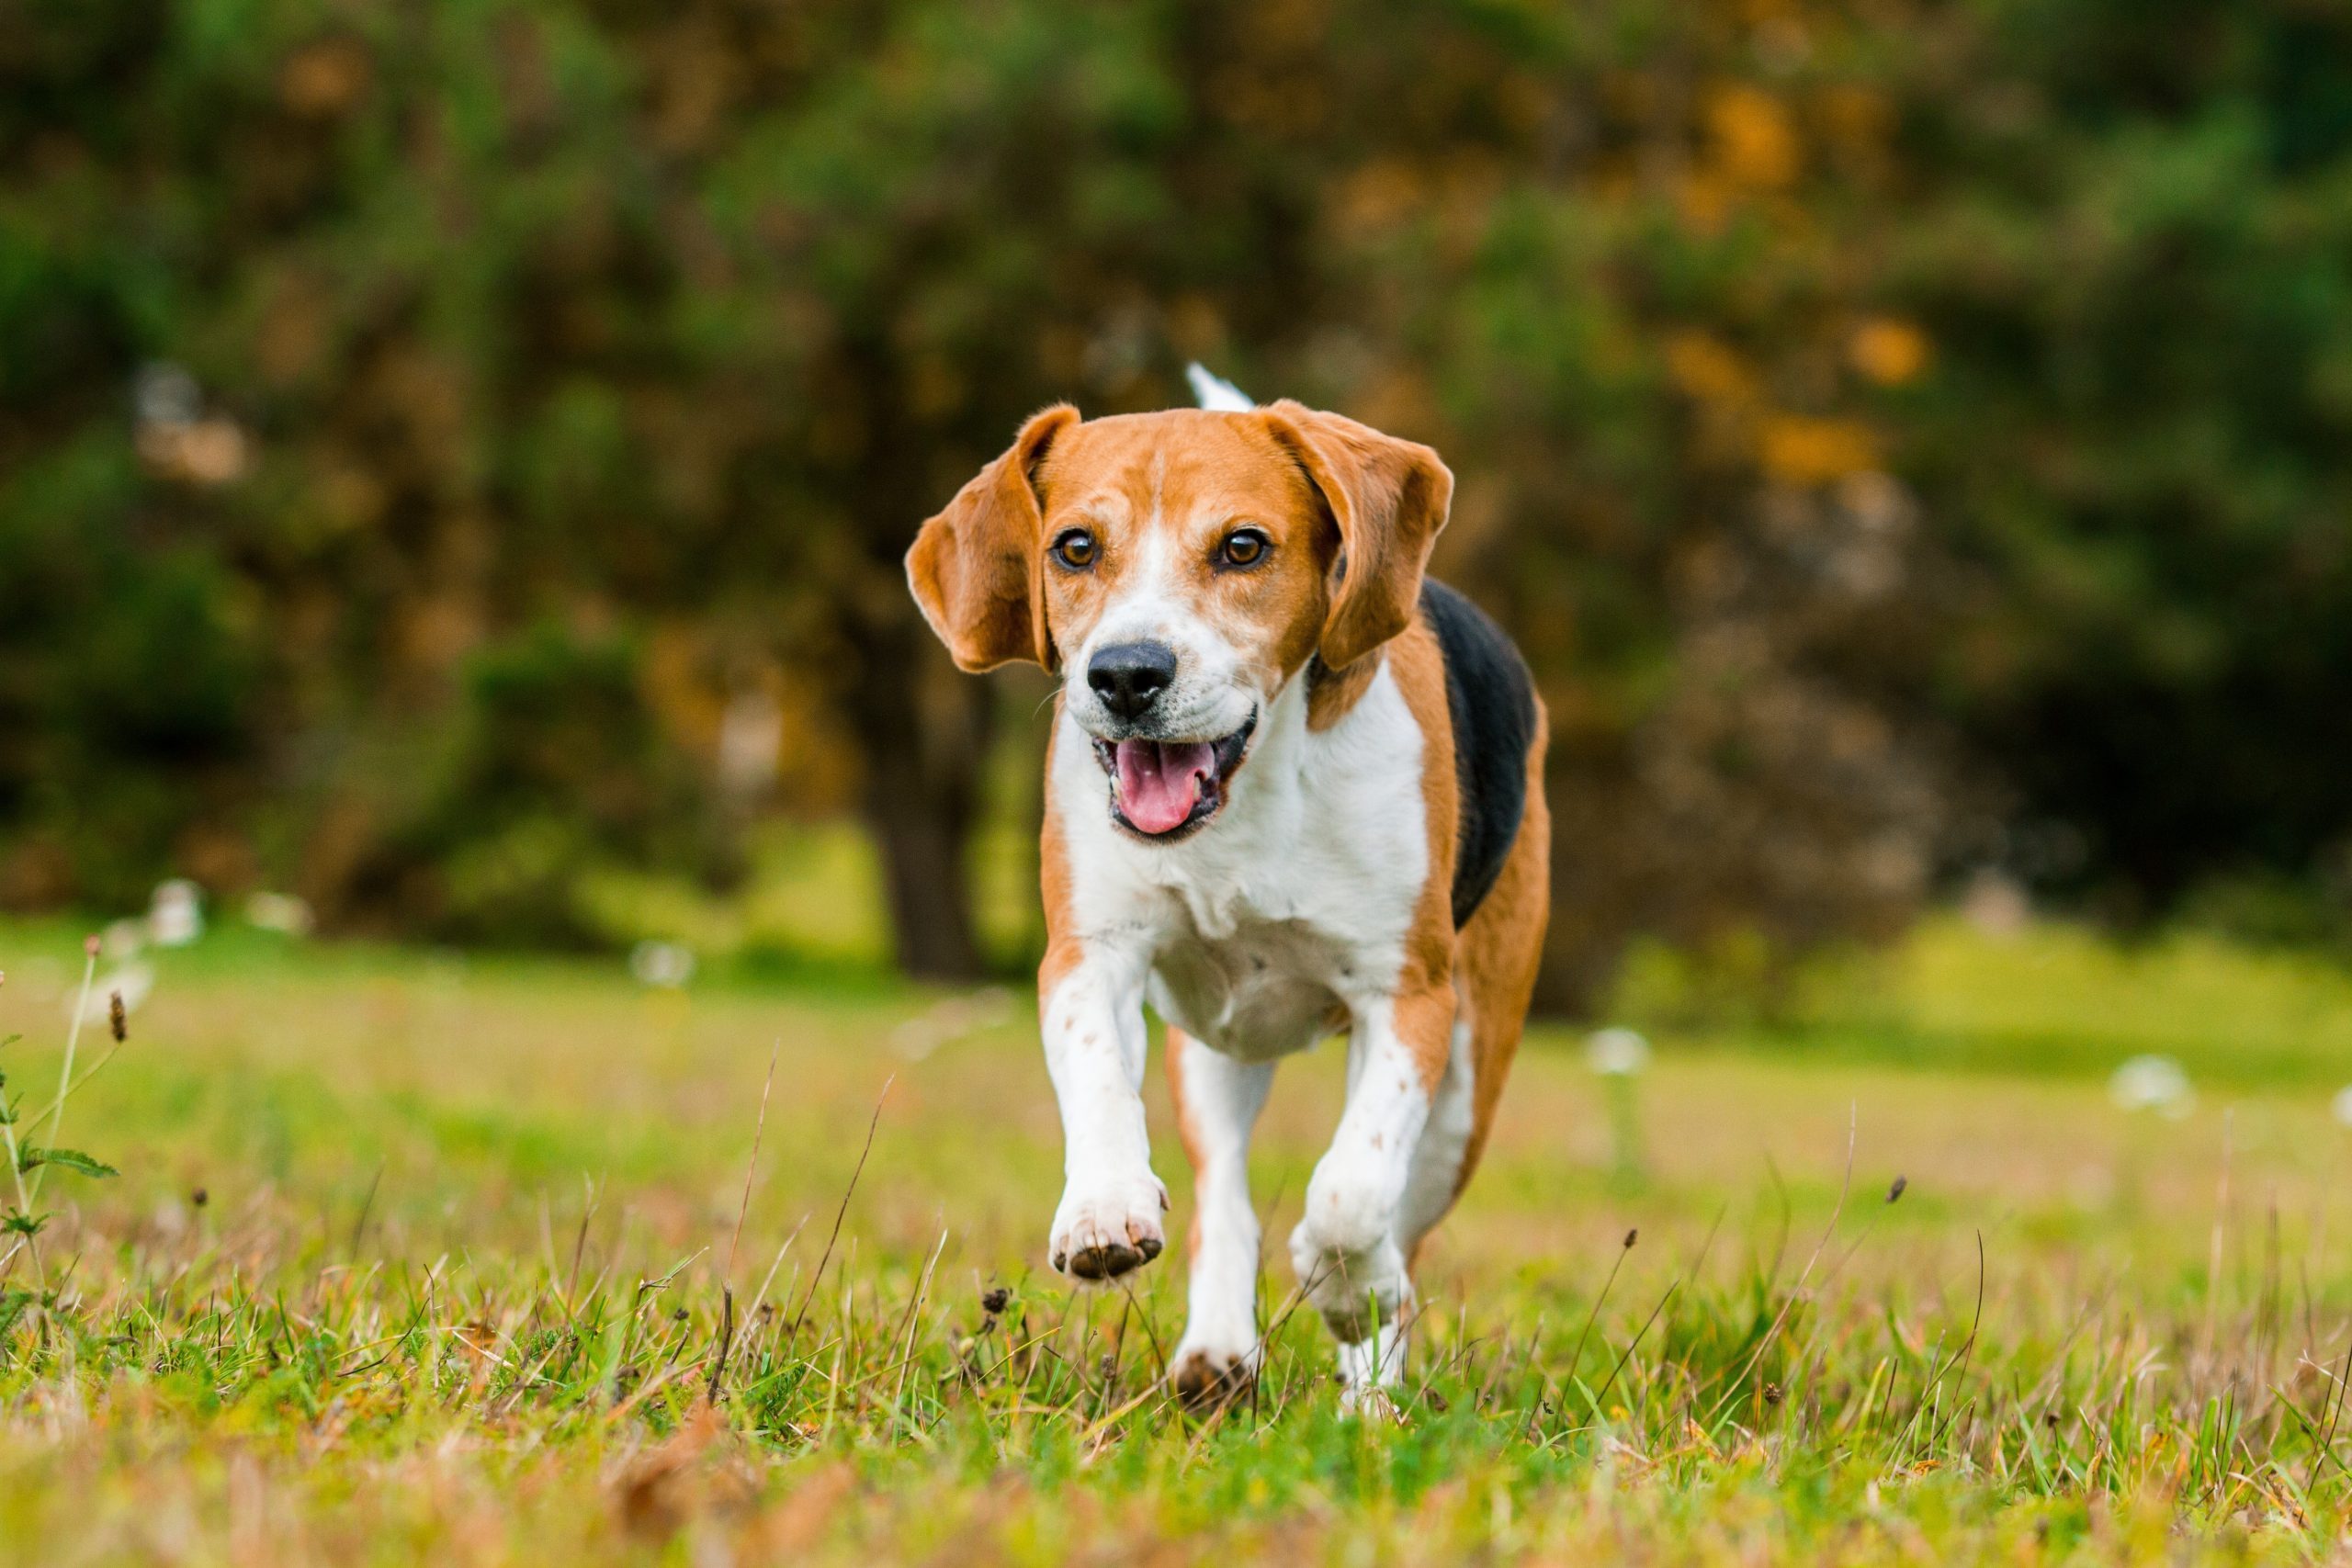 Scared of Dog Bites? Here Are the Safest Dog Breeds | Reader's Digest